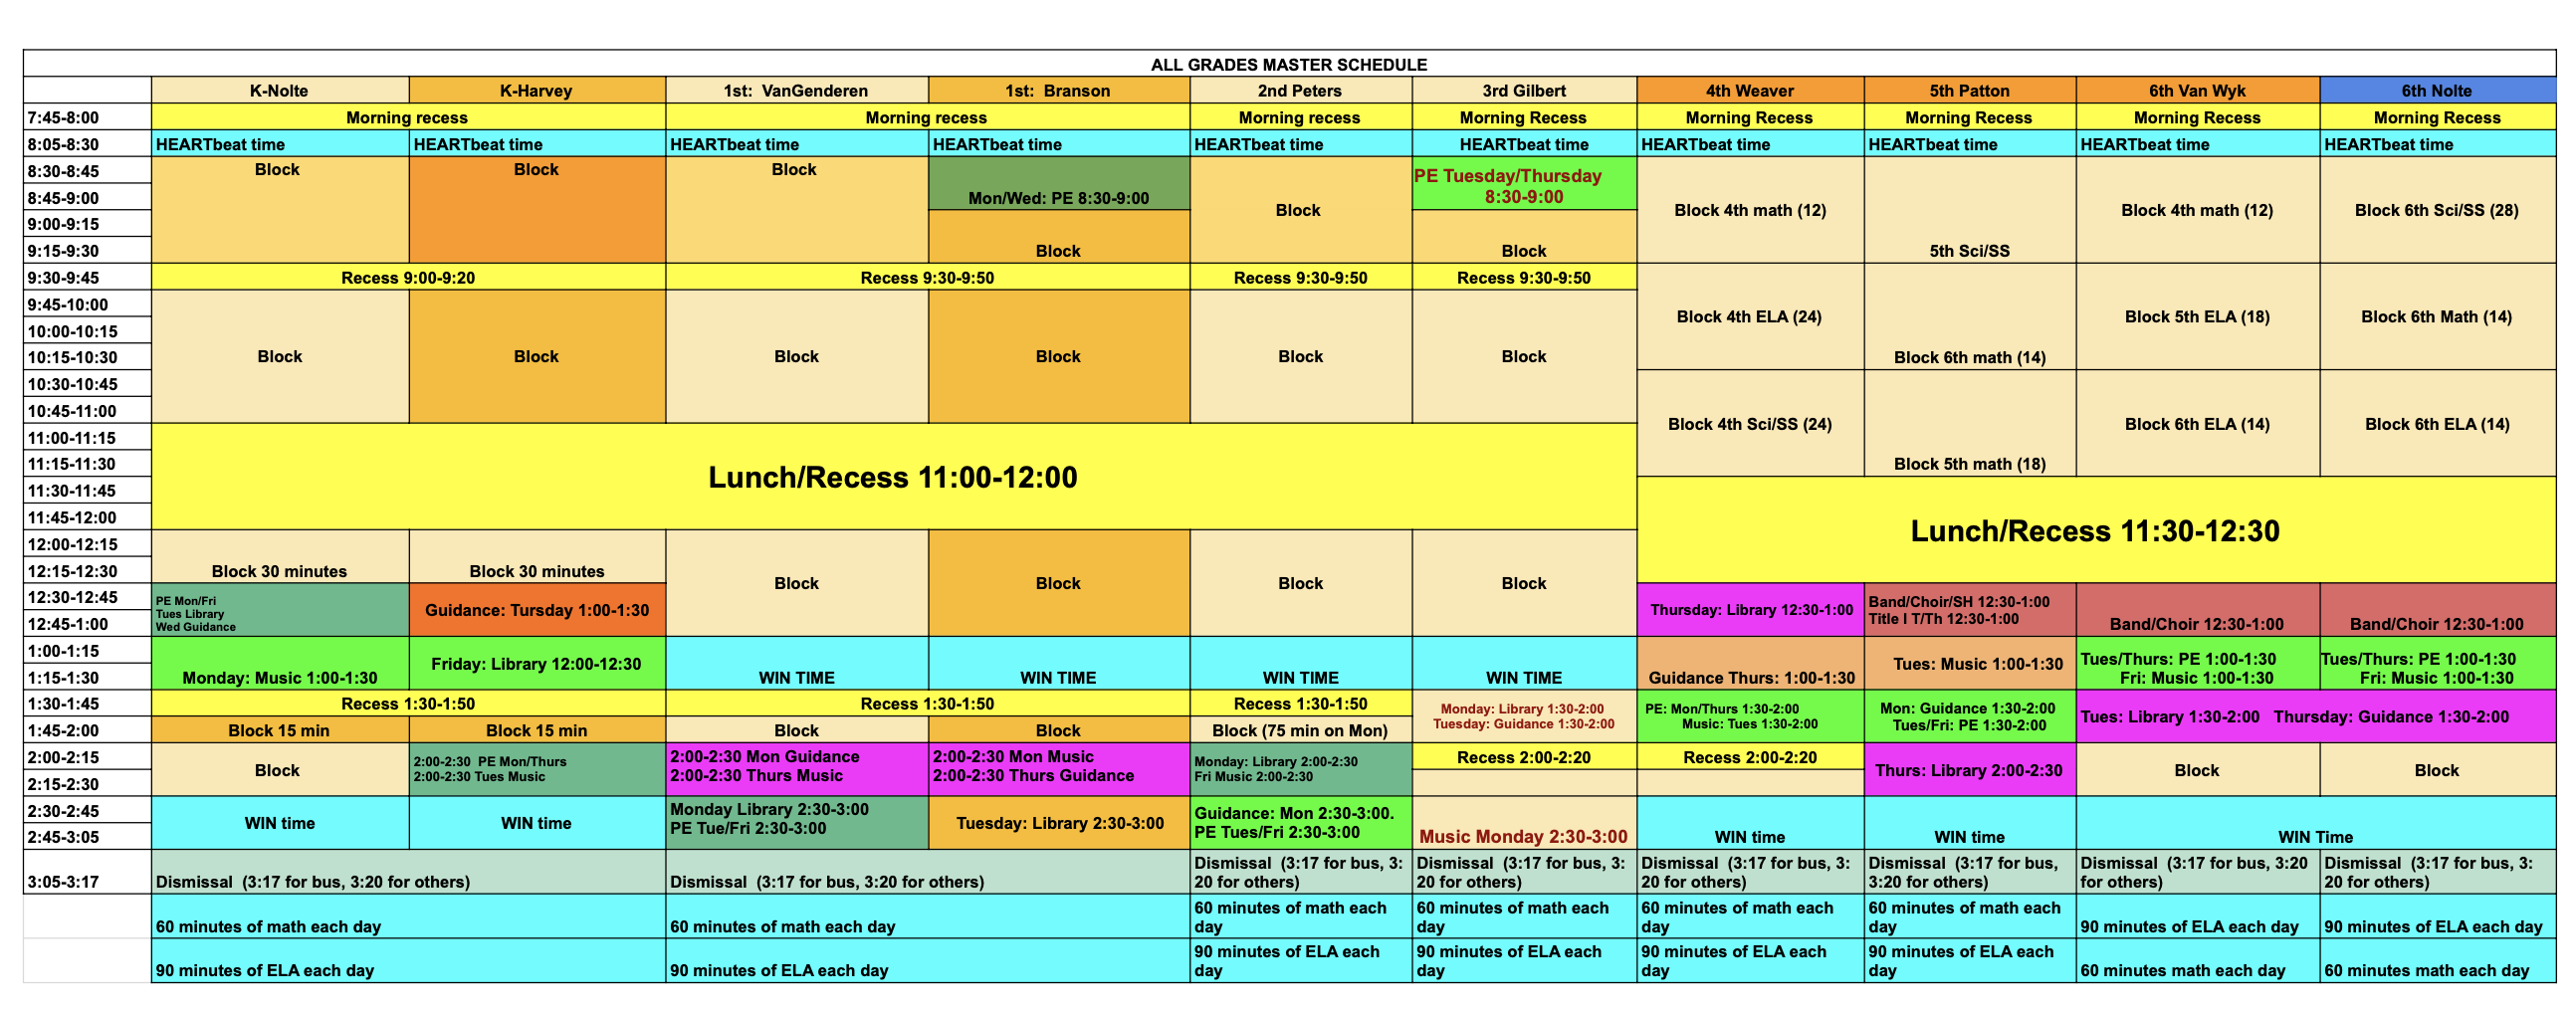 Elementary Schedule